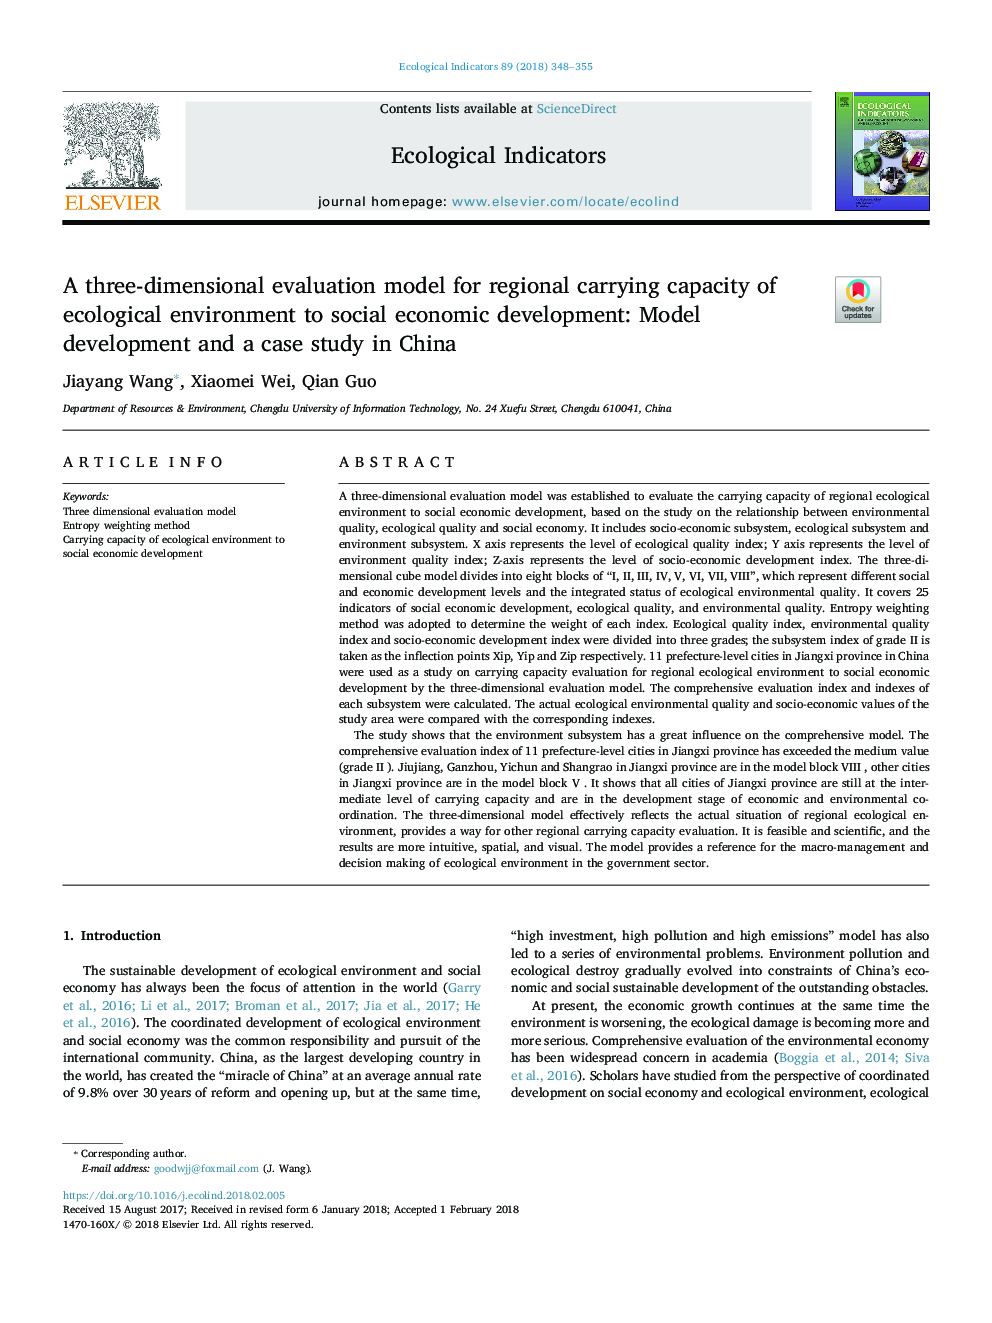 یک مدل ارزیابی سه بعدی برای ظرفیت باروری منطقه ای محیط زیست برای توسعه اقتصادی اجتماعی: توسعه مدل و مطالعه موردی در چین 